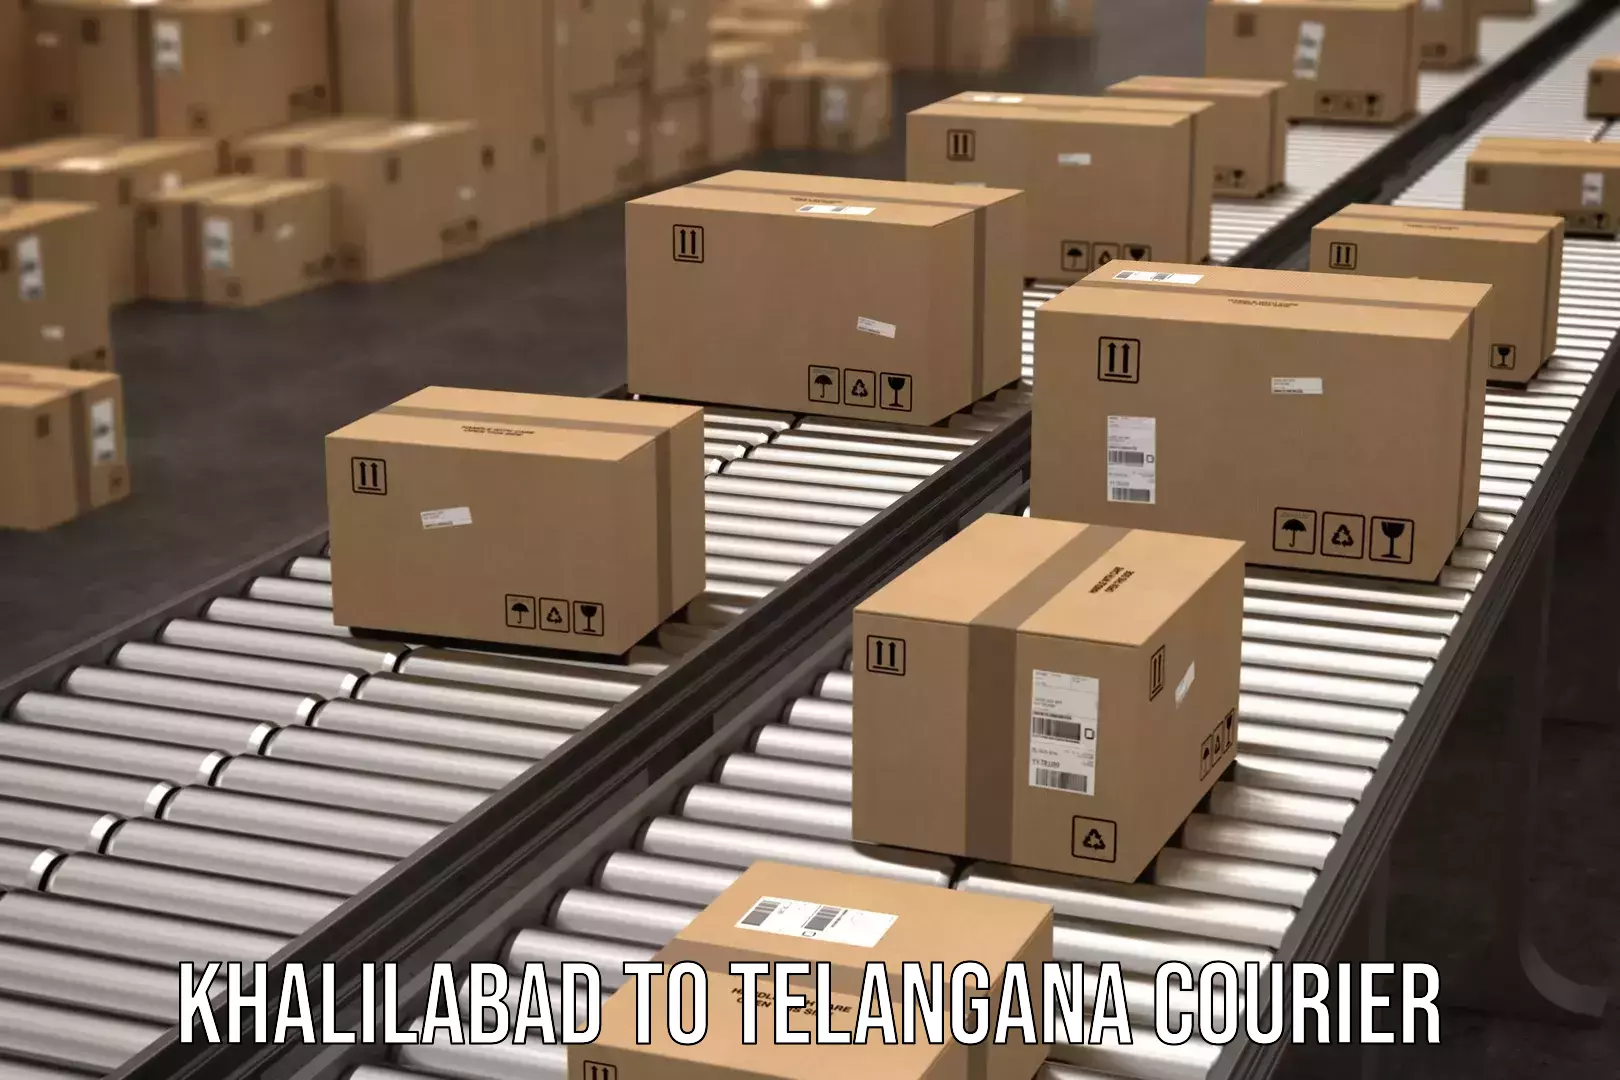 24/7 courier service Khalilabad to Telangana